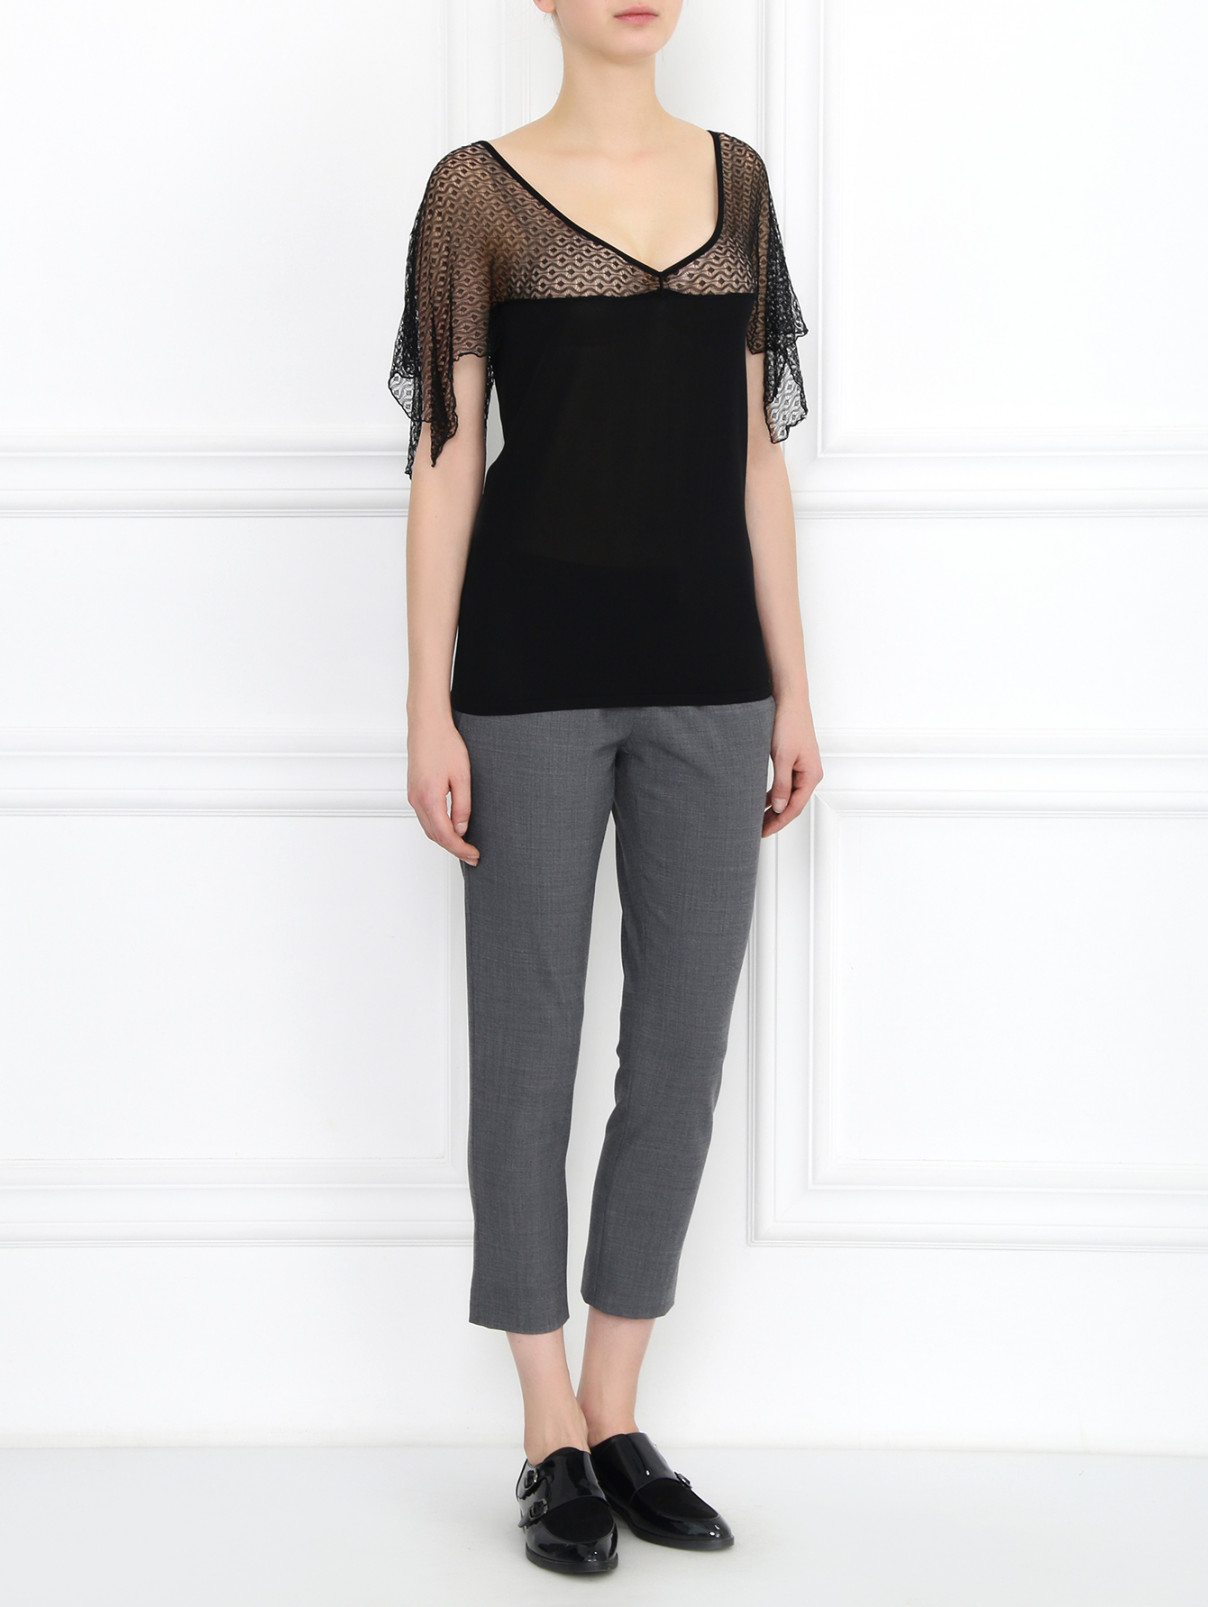 Полупрозрачная блуза с V-образным вырезом Burani Collezioni  –  Модель Общий вид  – Цвет:  Черный